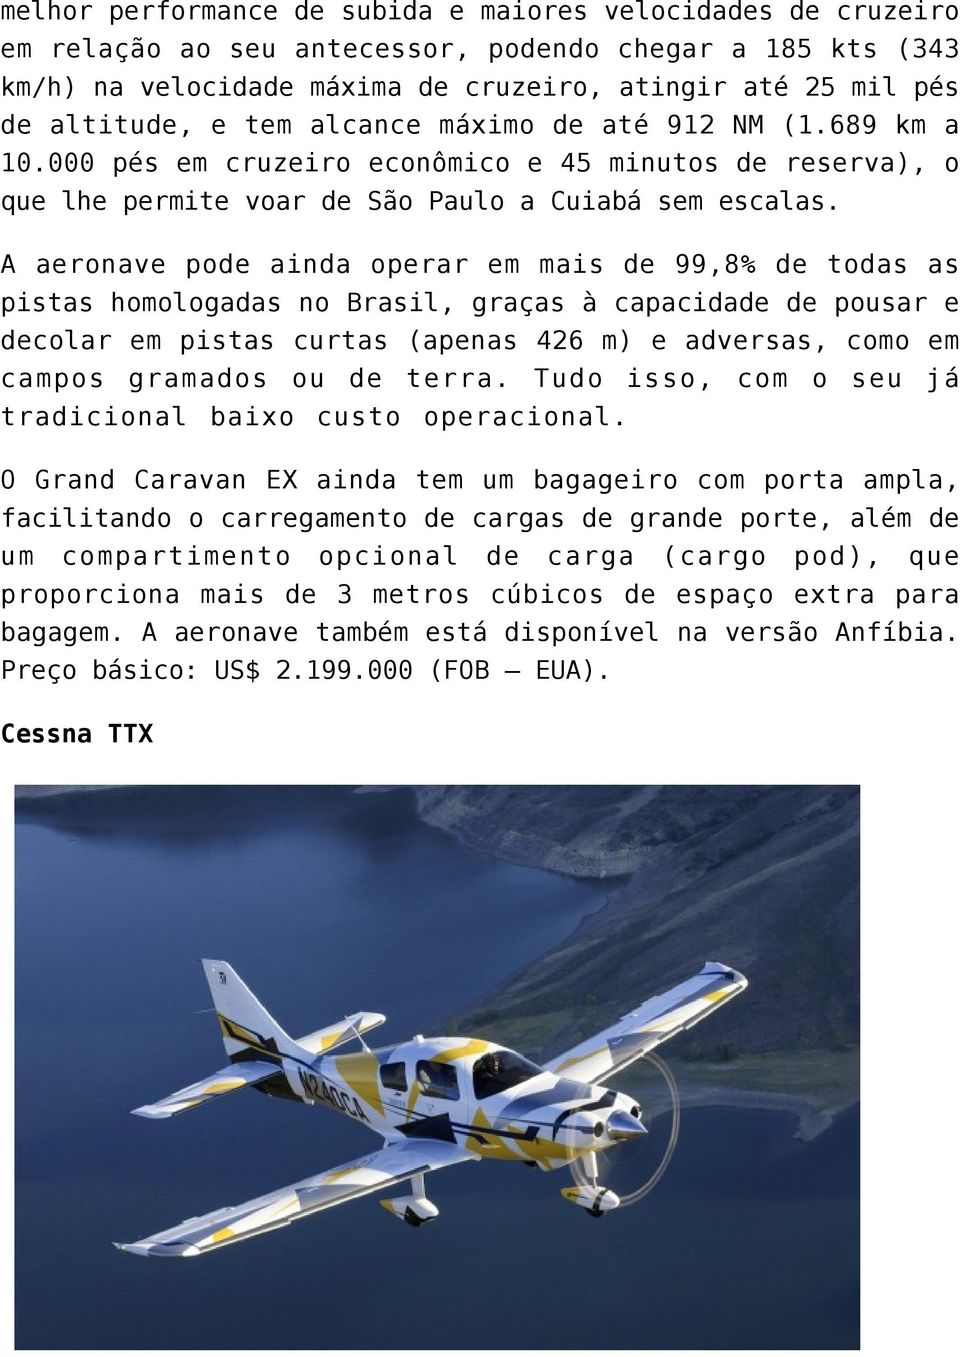 A aeronave pode ainda operar em mais de 99,8% de todas as pistas homologadas no Brasil, graças à capacidade de pousar e decolar em pistas curtas (apenas 426 m) e adversas, como em campos gramados ou